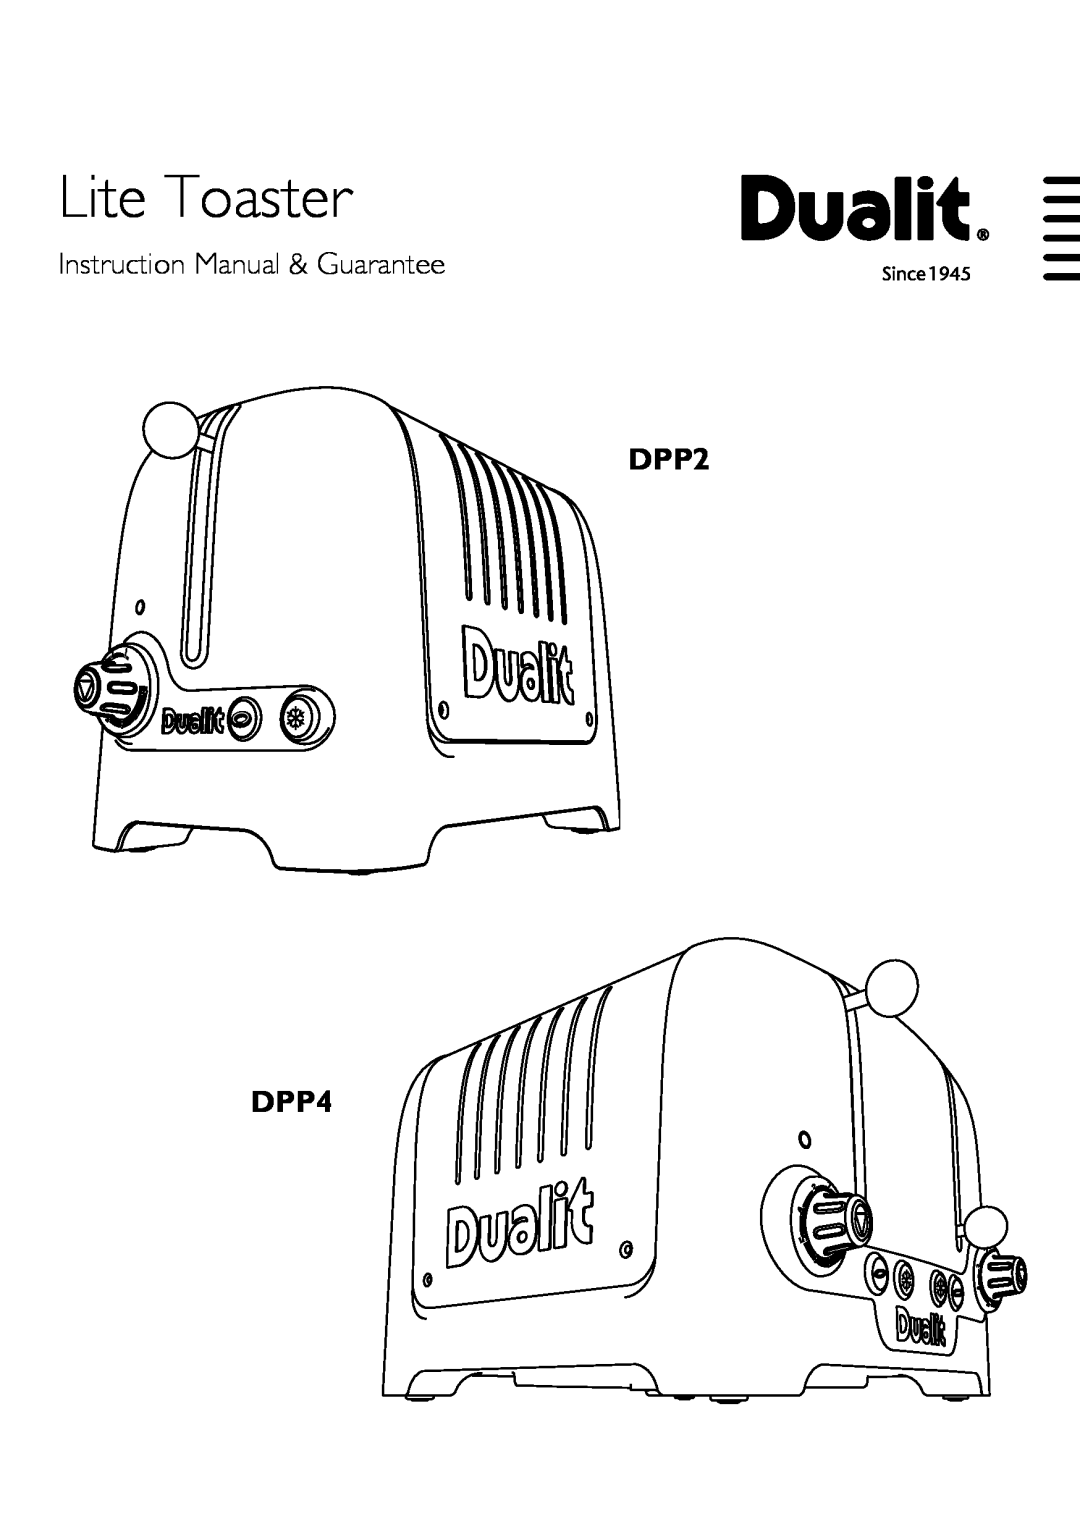 Dualit instruction manual Lite Toaster, DPP2 DPP4 